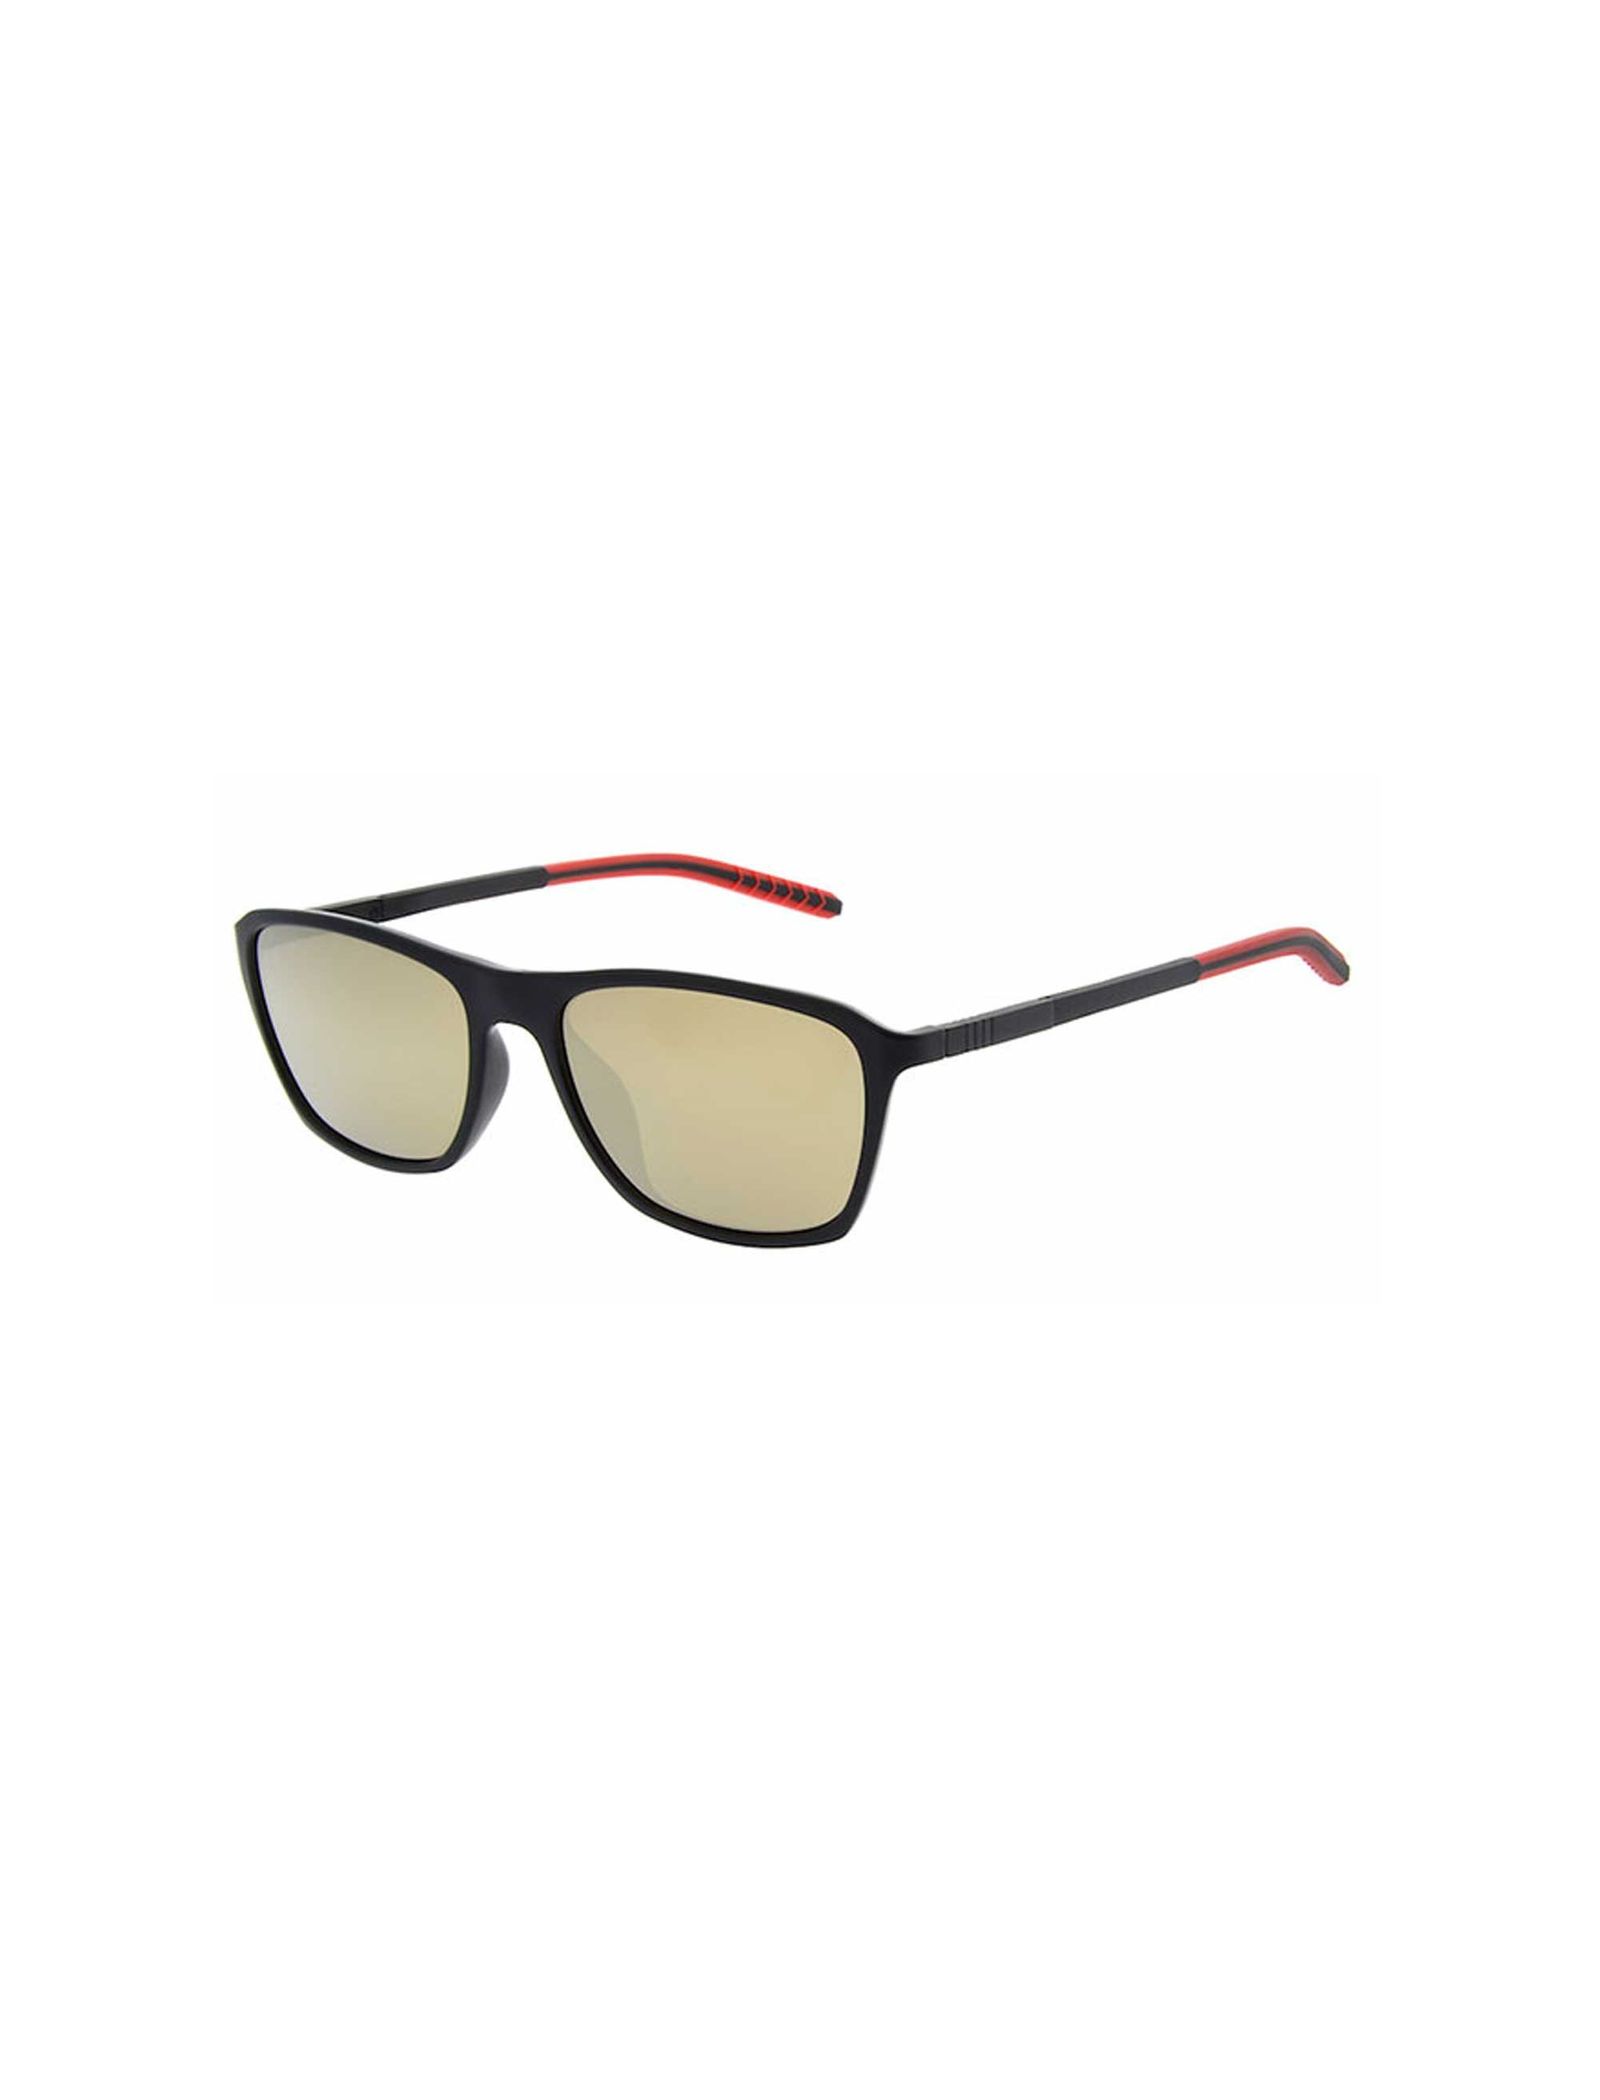 عینک آفتابی ویفرر مردانه - اسپاین - مشکي/قرمز - 1